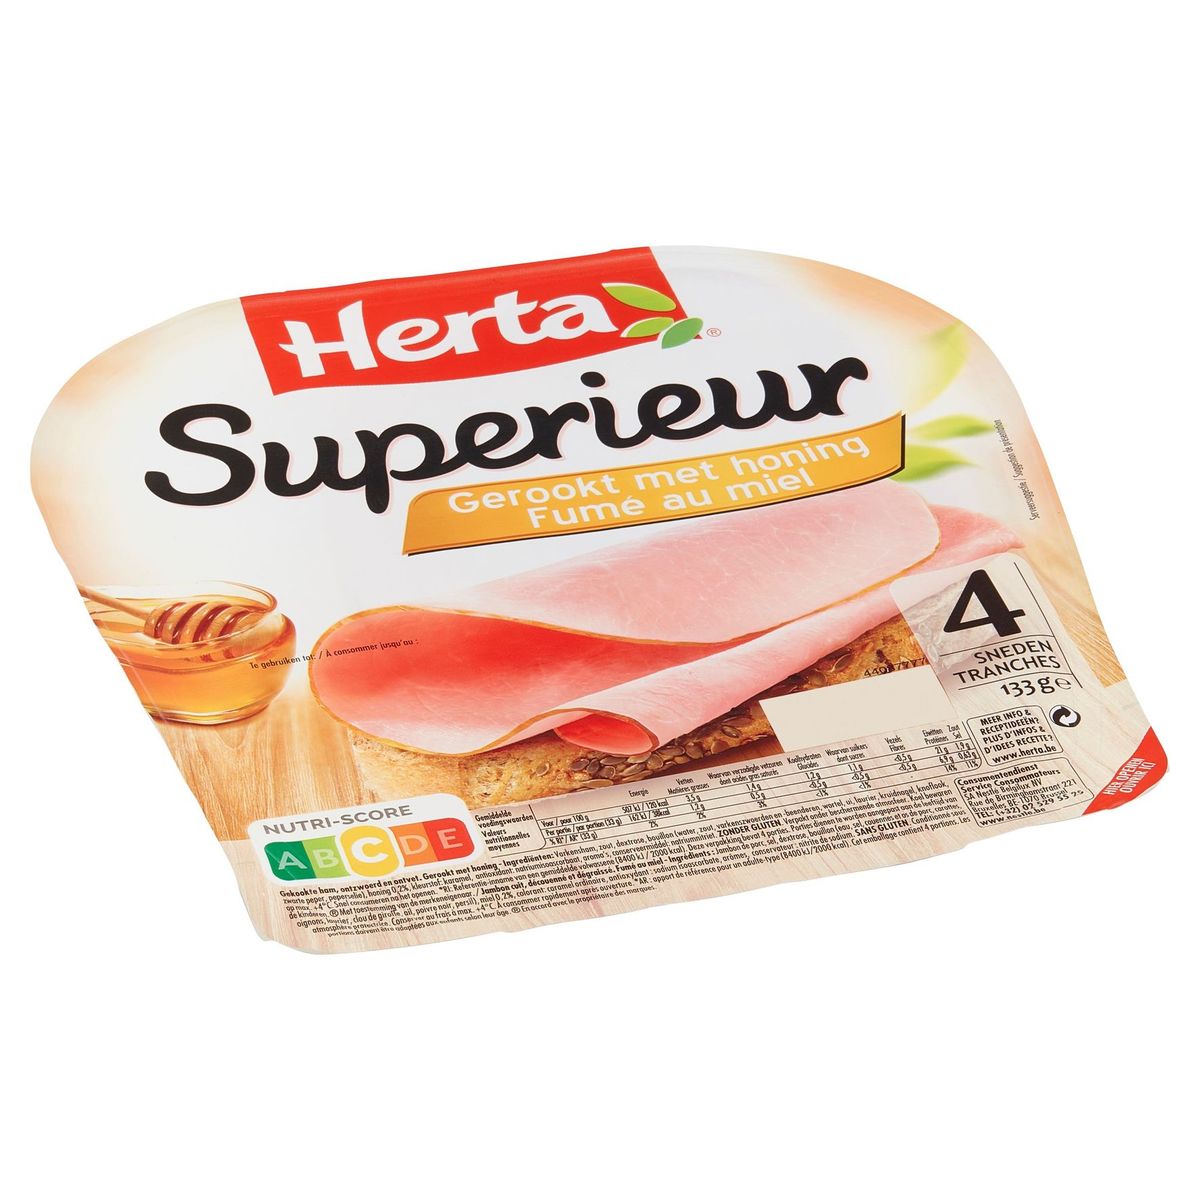 Herta Superieur Gerookt met Honing 4 Sneden 133 g